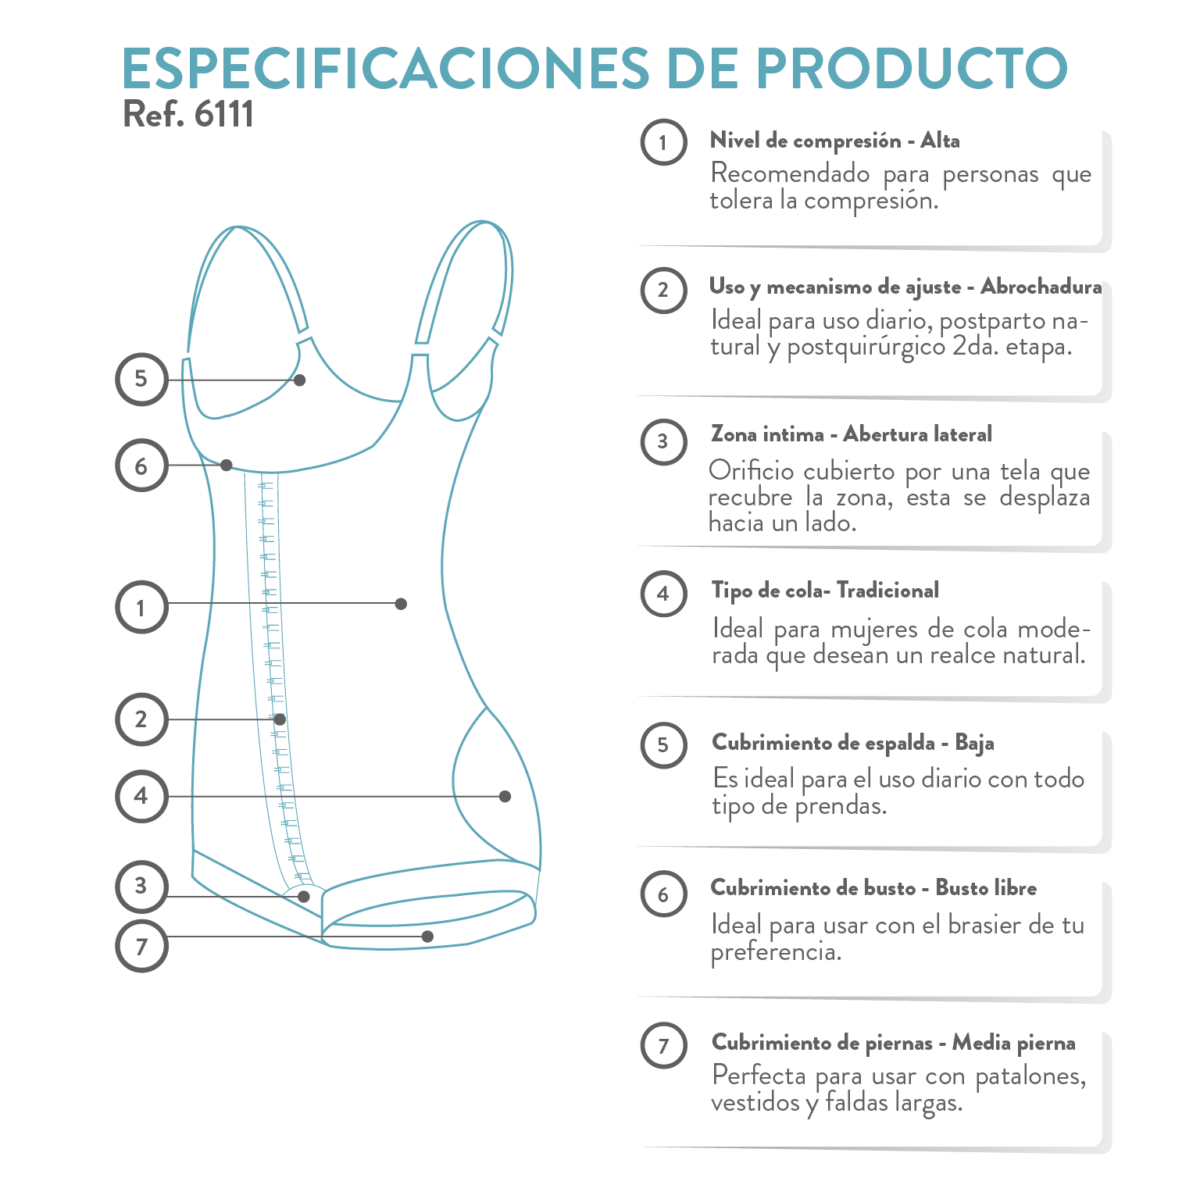 La faja colombiana con busto libre, ayuda a adherir la piel al musculo, reducen la sencación de vacio, moldea y realza la figura. Ideal para posparto.